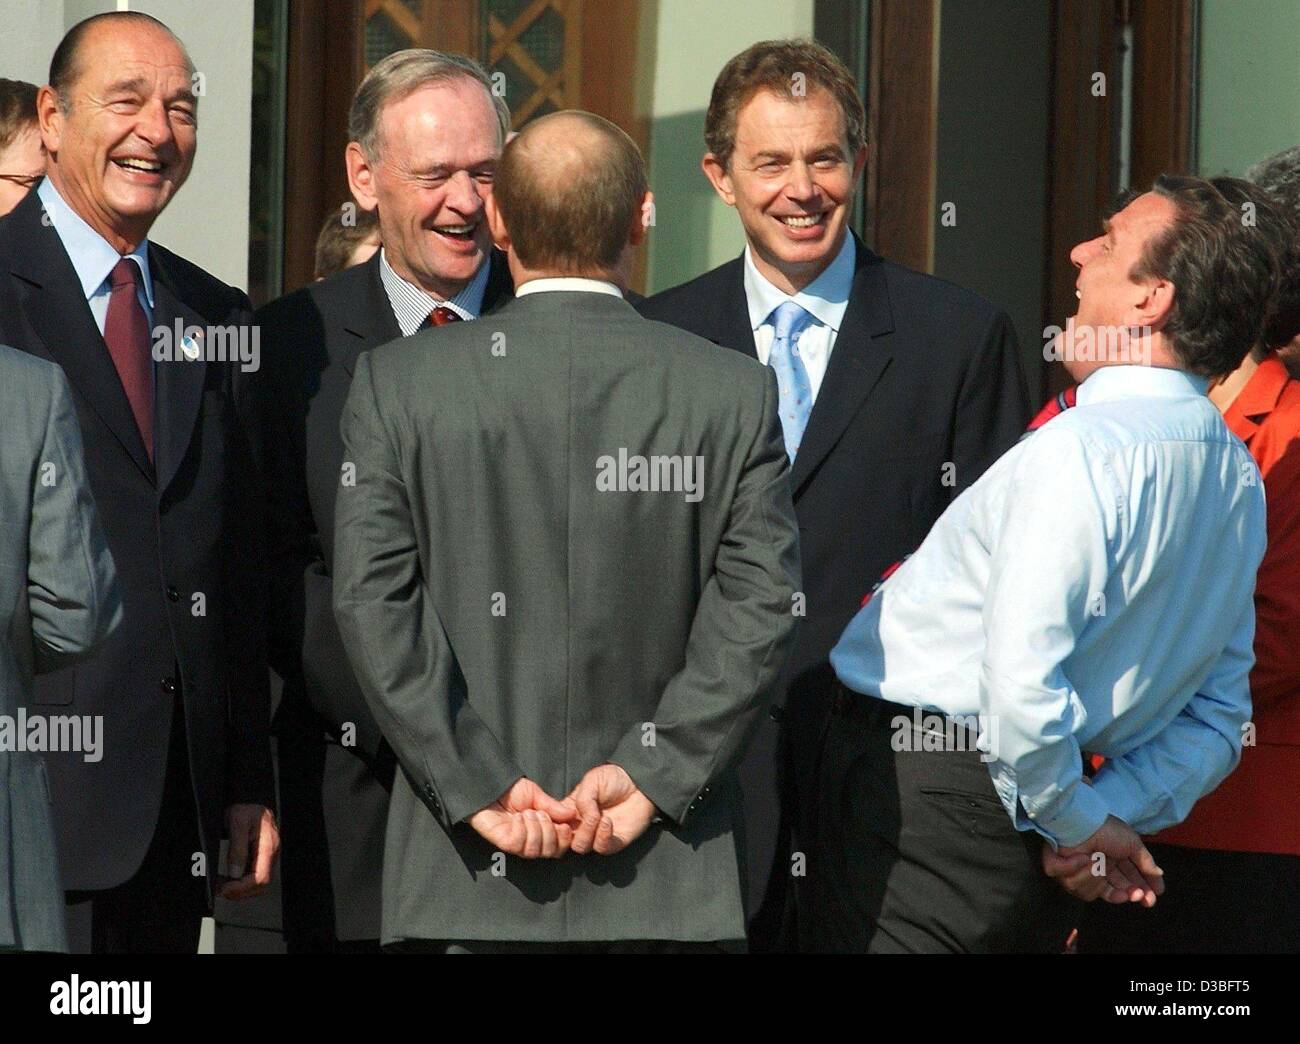 (Dpa) - von R: Bundeskanzler Gerhard Schroeder, der britische Premierminister Tony Blair, der russische Präsident Vladimir Putin, kanadischen Premier Jean Chretien und der französische Präsident Jacques Chirac in einer entspannten Atmosphäre zusammen stehen und lachen während des G8-Gipfels in Evian, Frankreich, 3. Juni 2003. Fragen der Stockfoto